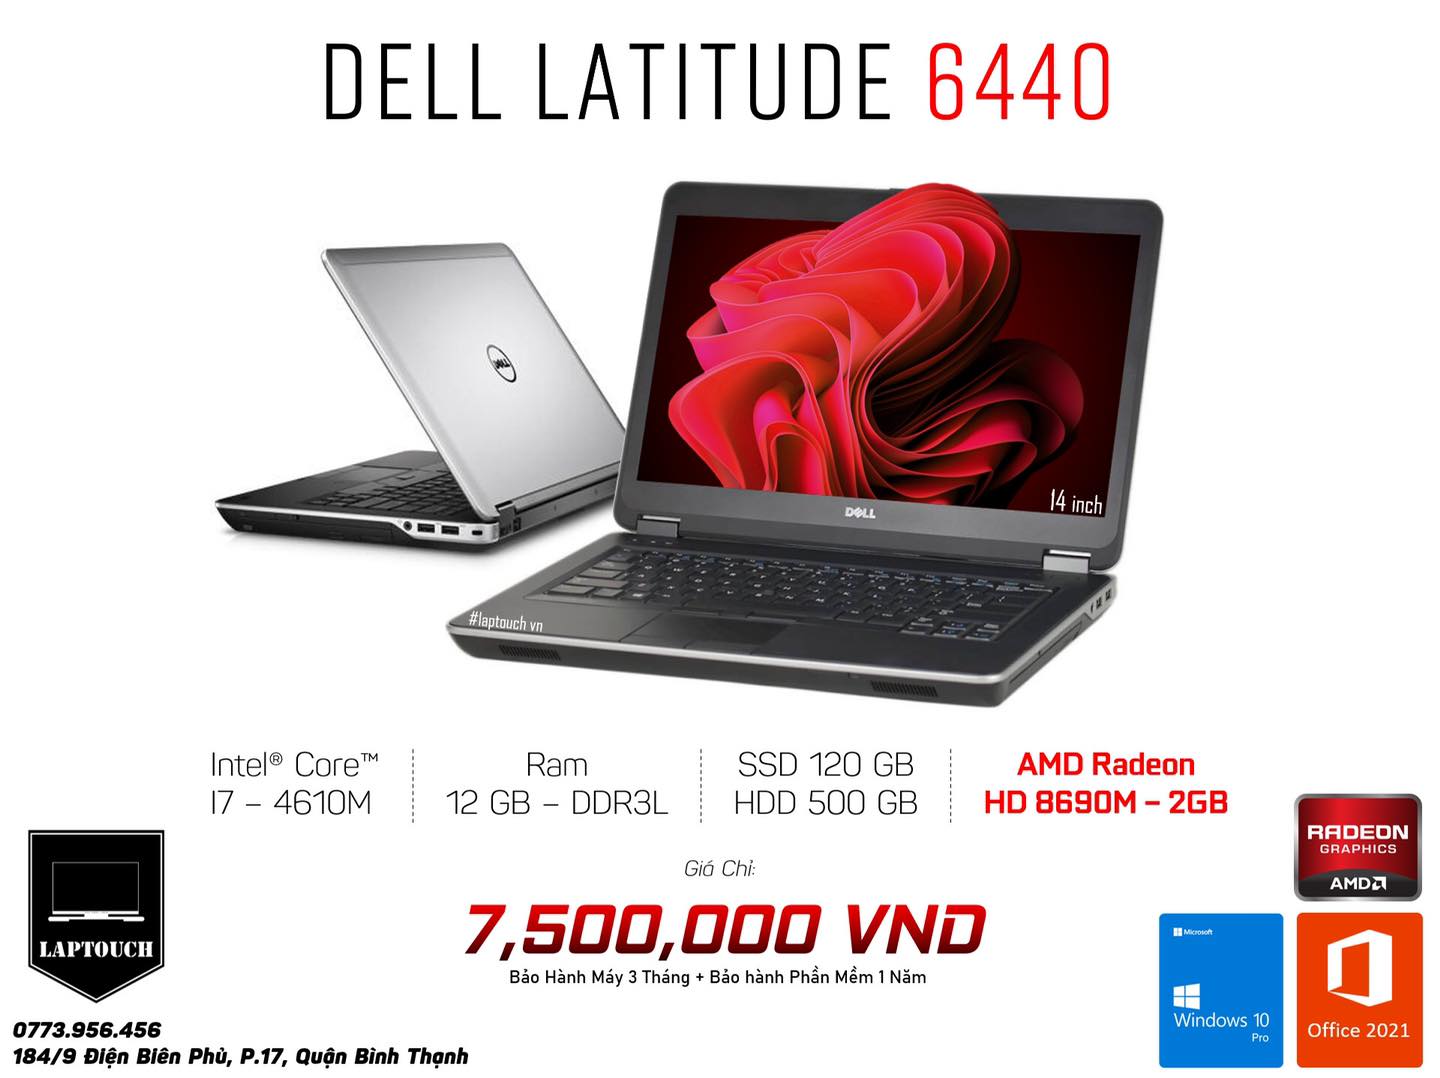 Dell Latitude 6440